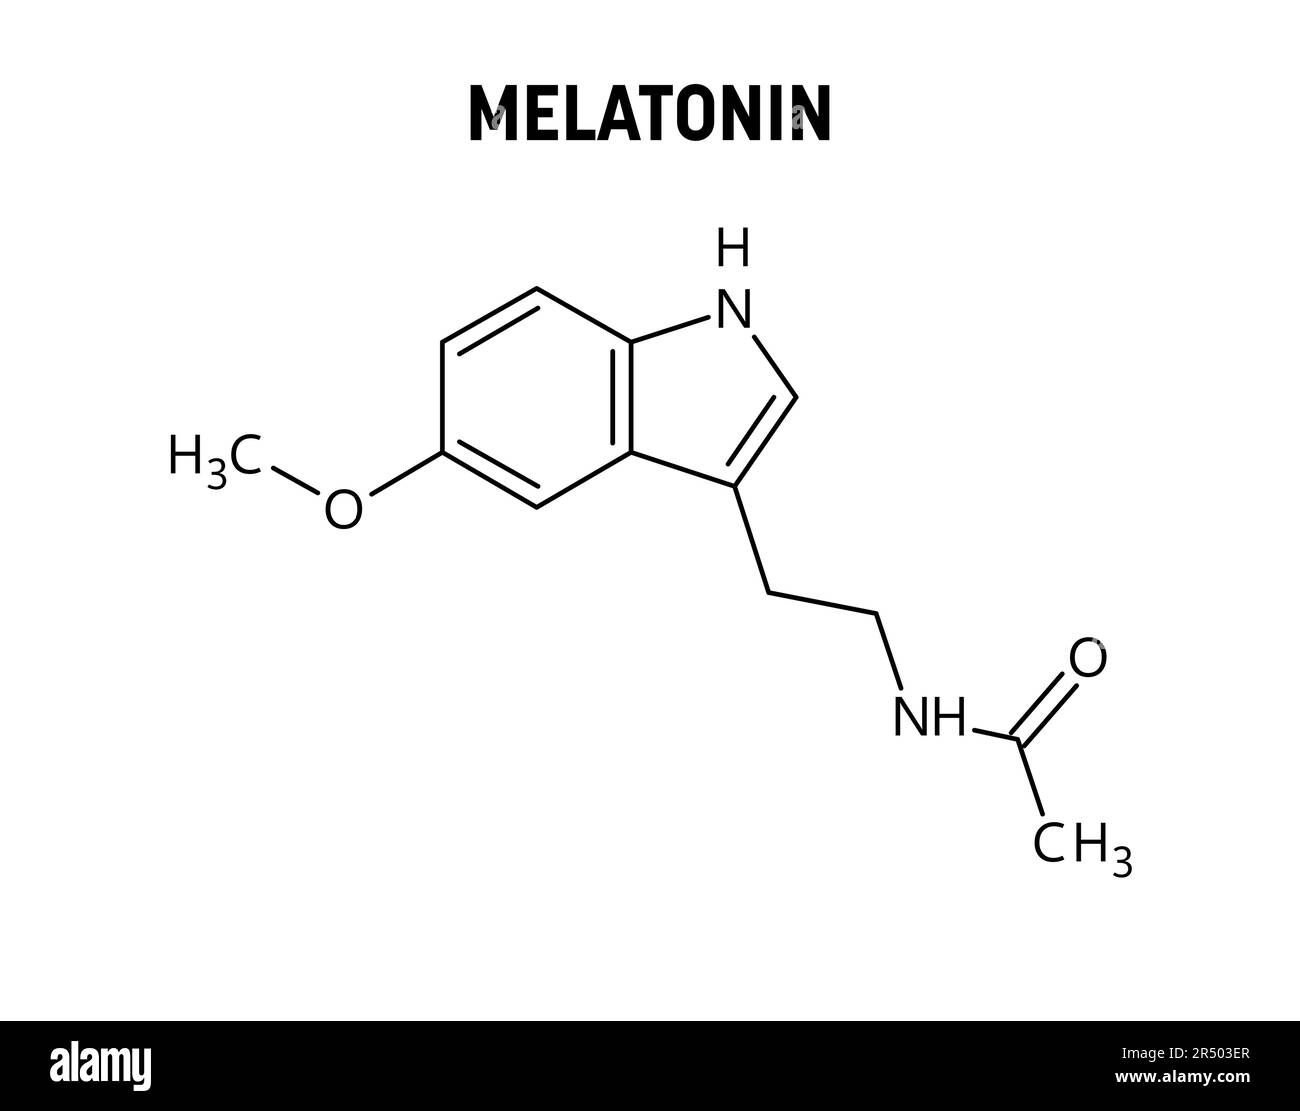 Structure moléculaire de la mélatonine. La mélatonine est une hormone contrôlant le cycle sommeil-réveil. Formule structurale vectorielle de composé chimique. Illustration de Vecteur